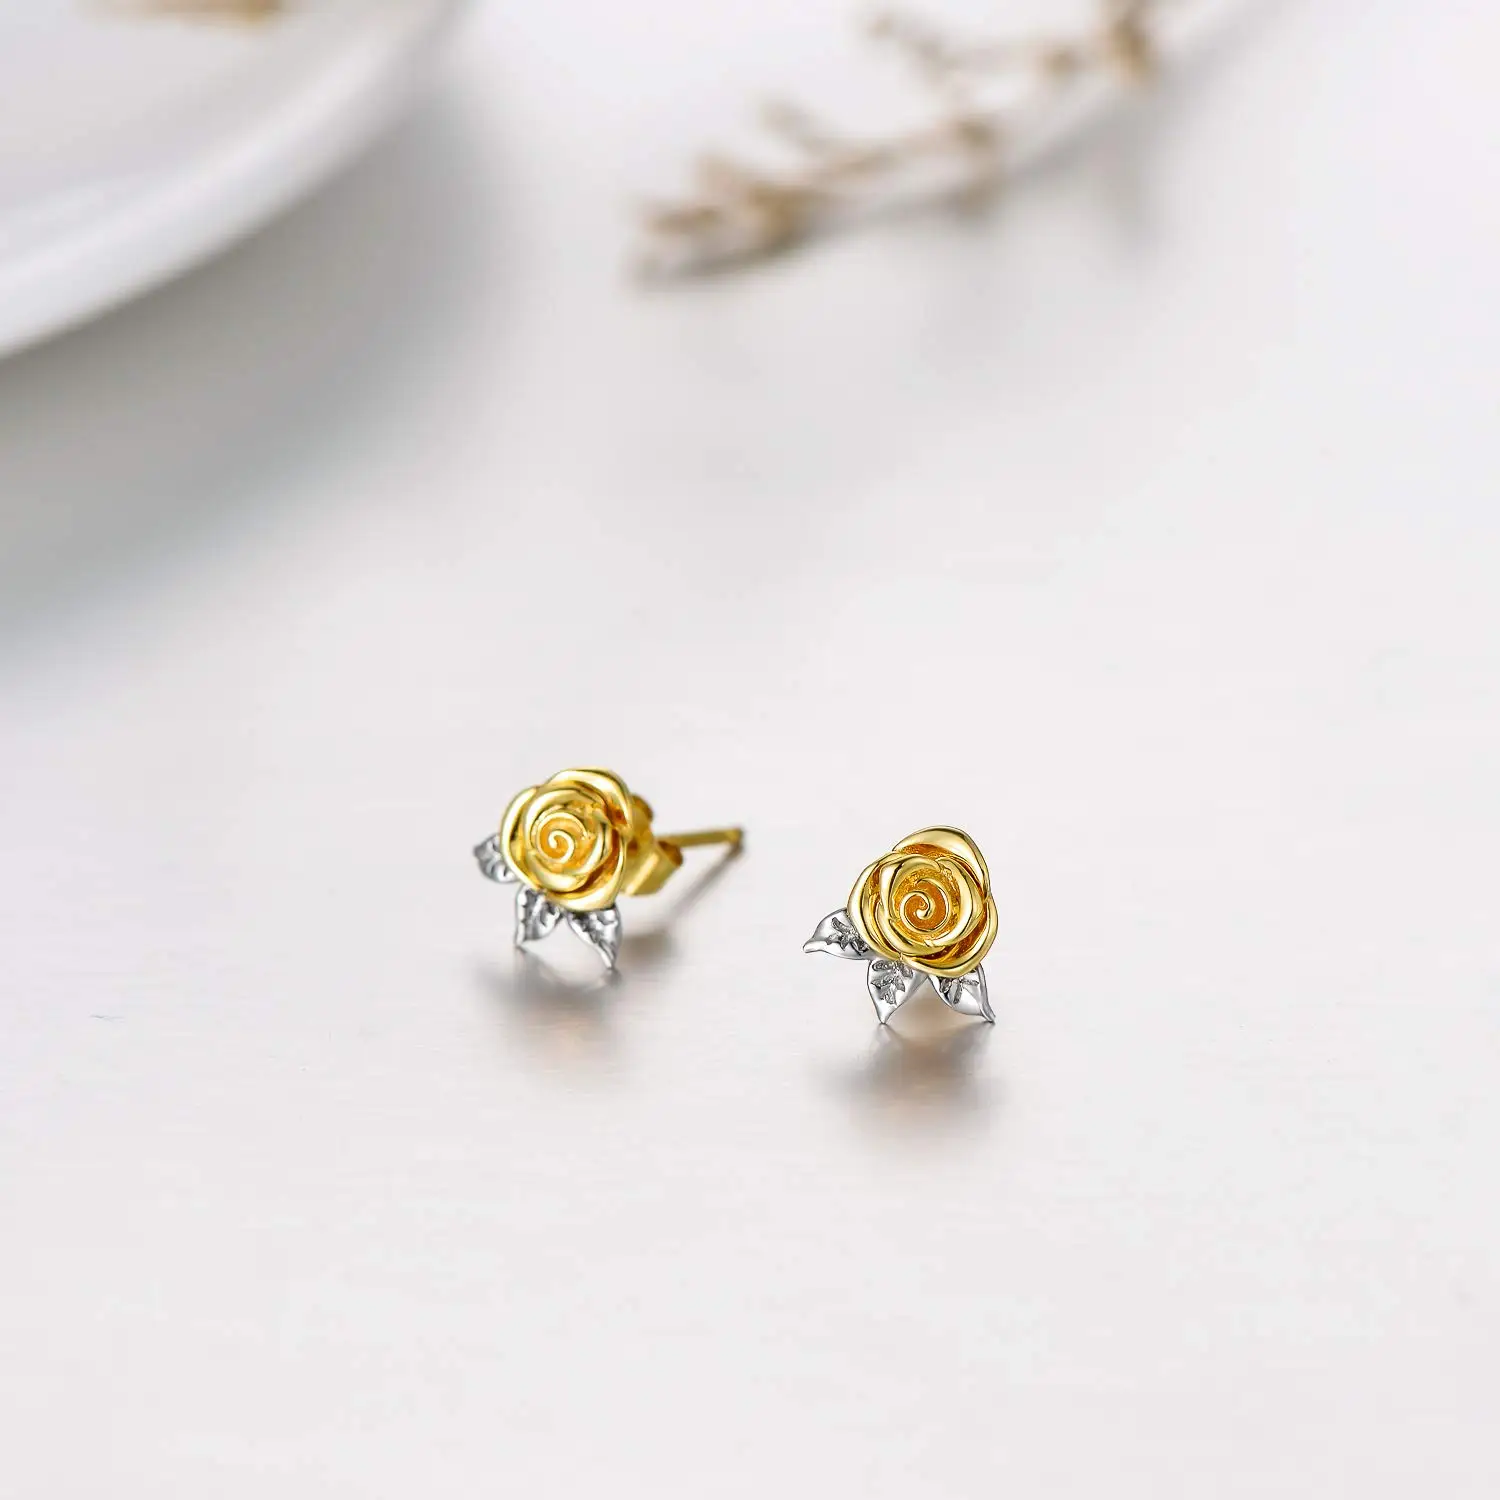 YFN 14K Gold Flower Stud Earrings for Women Delicate Yellow Gold Rose Flower Stud Earrings Fine Jewelry